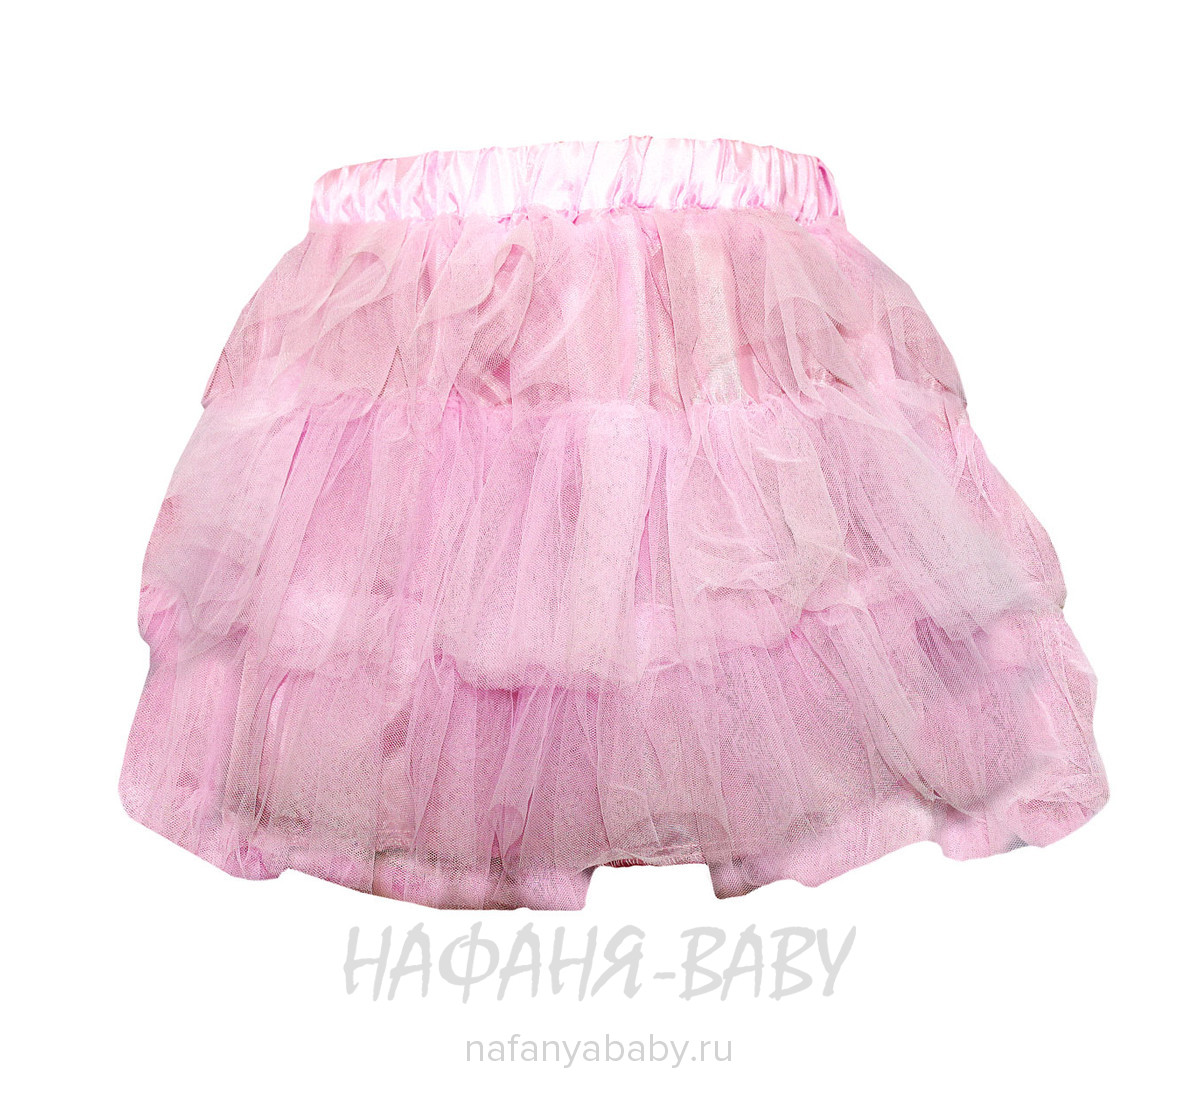 Детская юбка KGMART, купить в интернет магазине Нафаня. арт: 2233.